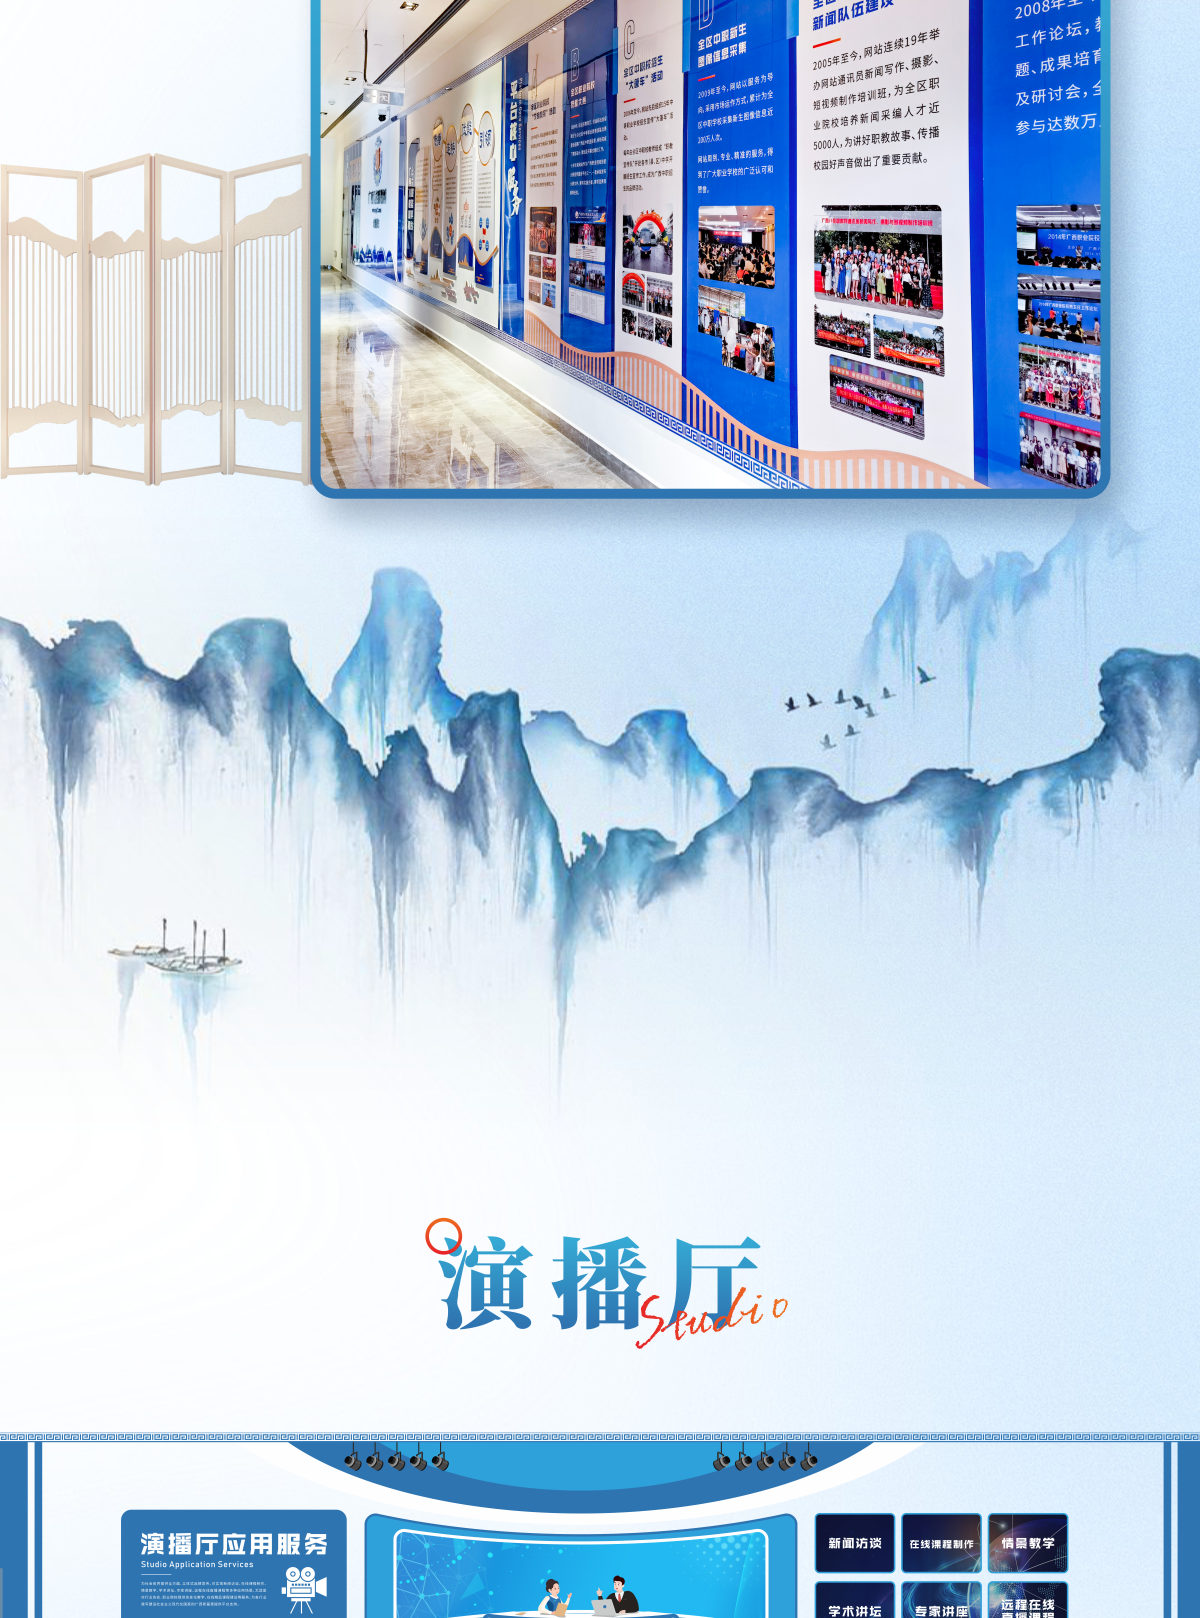 八桂职教网文化走廊企业文化墙设计制作1_01.png